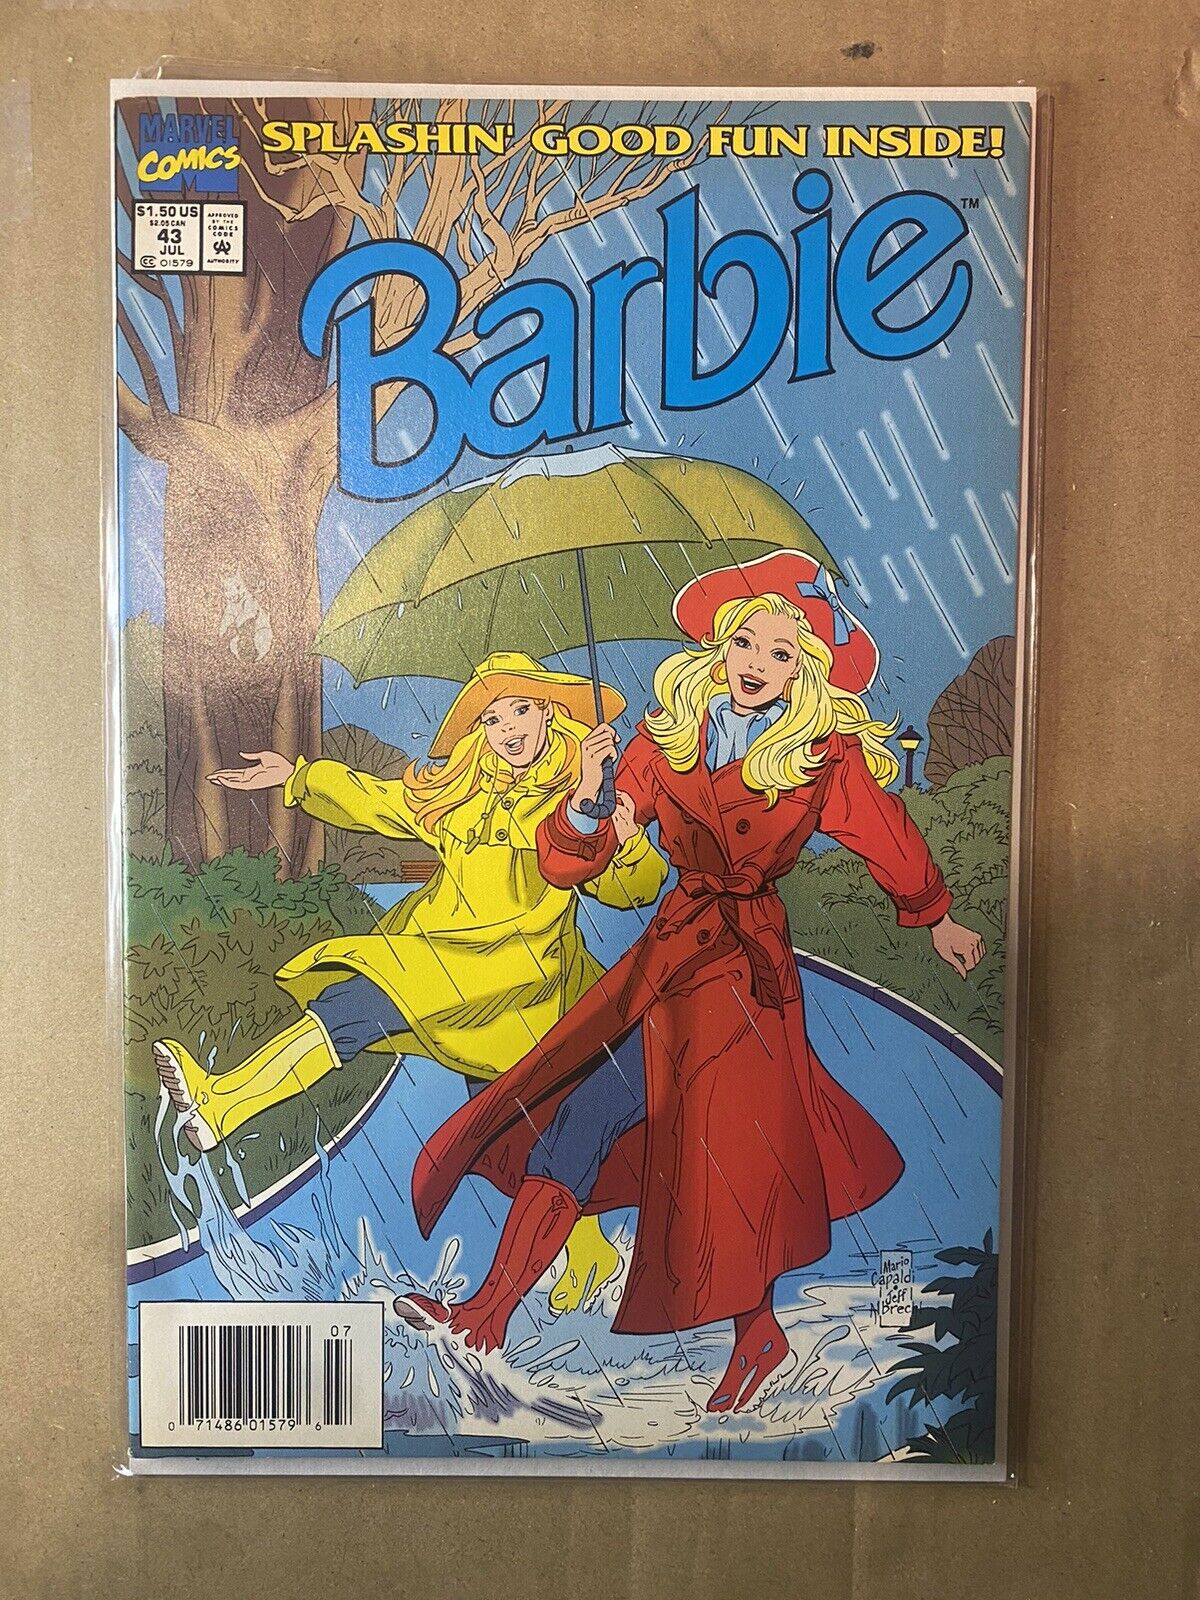 BARBIE #43 NEWSSTAND HIGH GRADE Marvel Comic Book